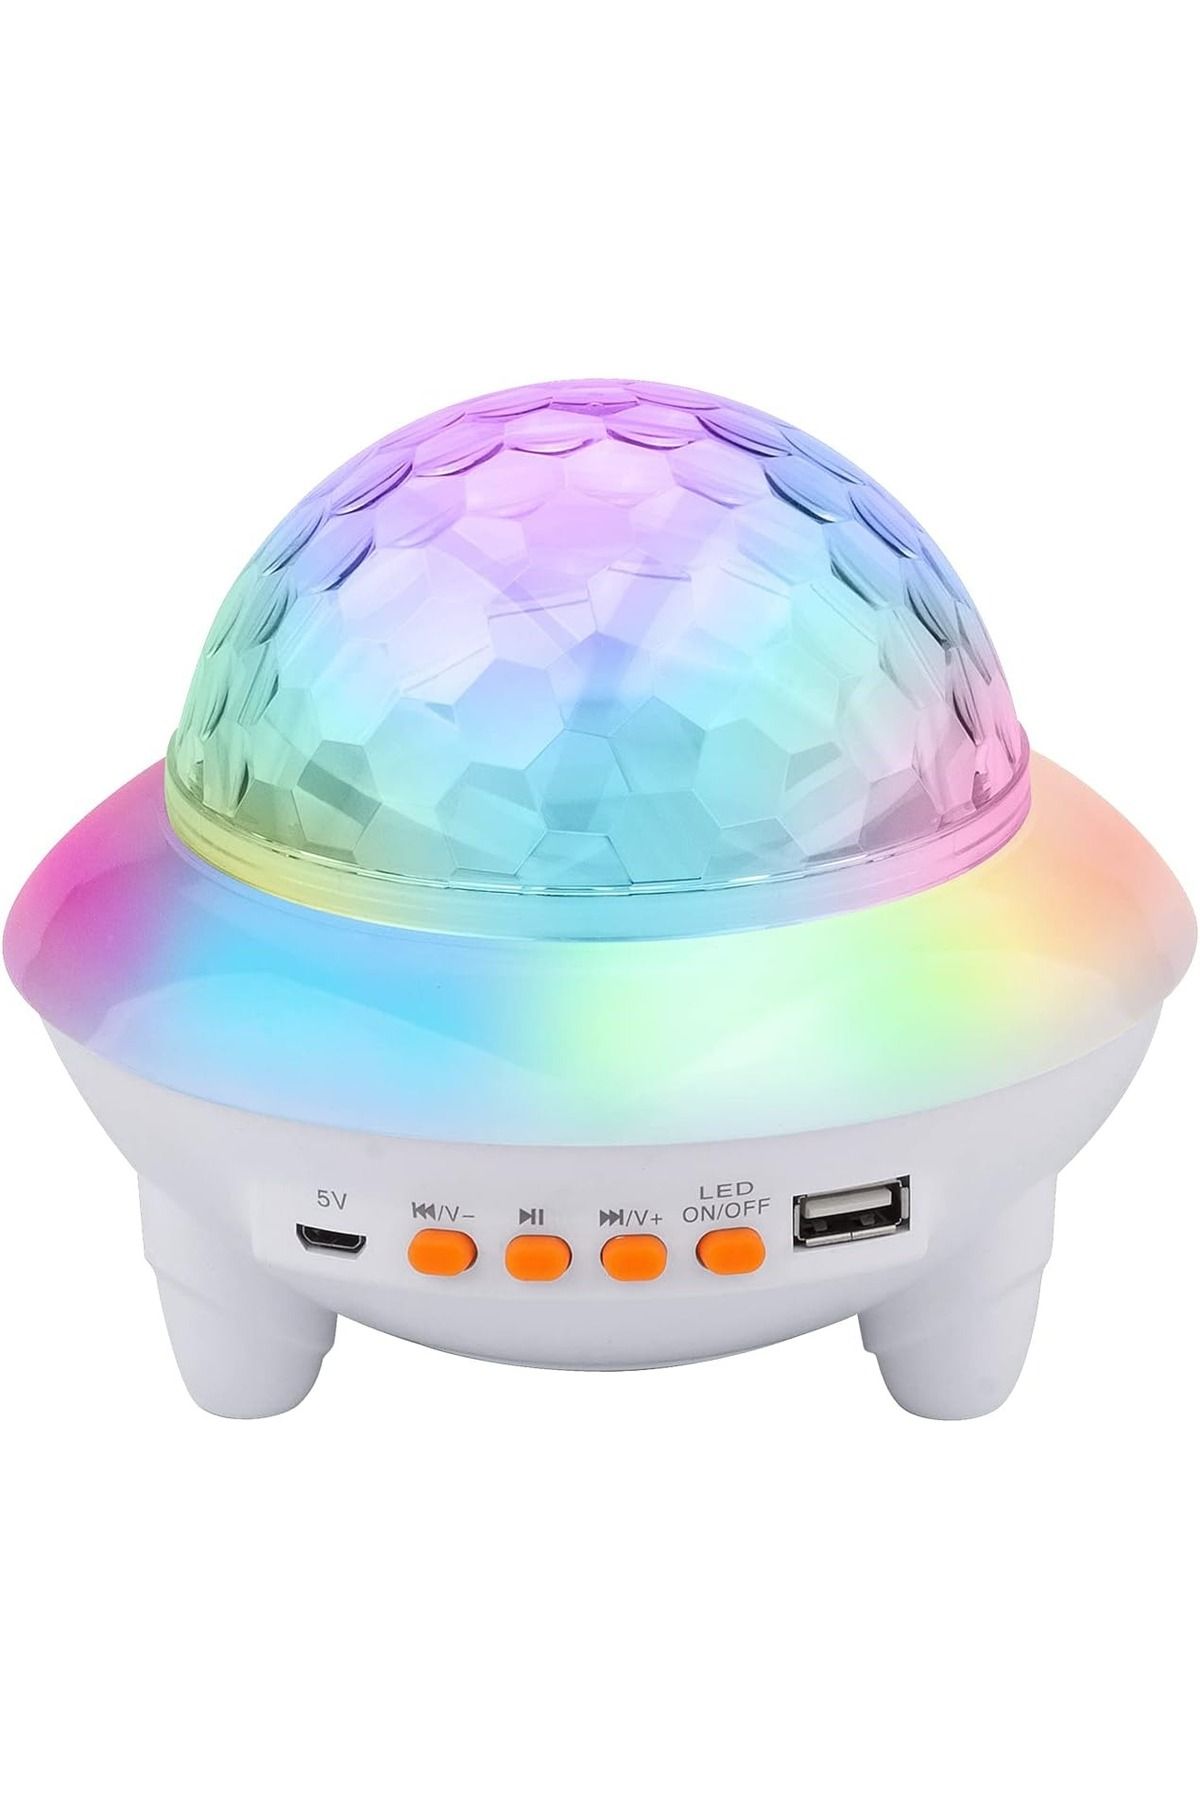 gaman Gece Lambası Bluetooth Hoparlör Rgb Tavan Yansıtma Gece Lambası 9 Mod Ufo Çocuk Odası Gece Lambası